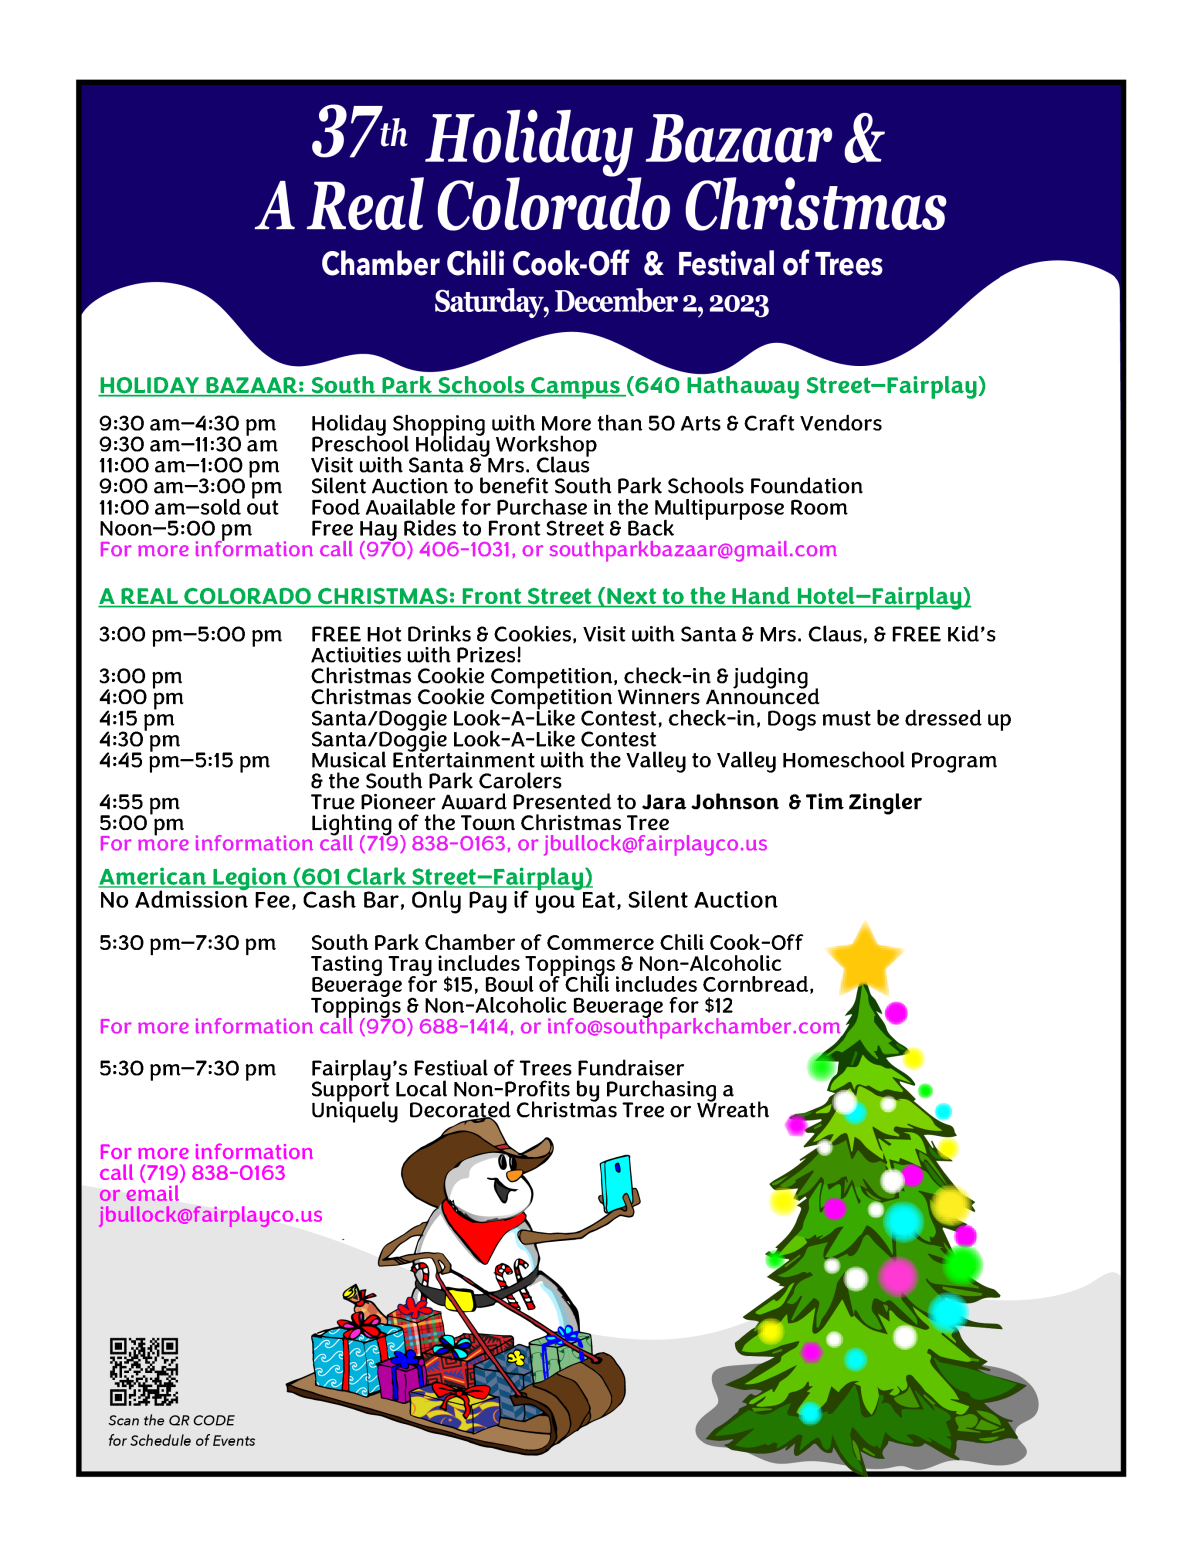 Holiday Bazaar & Real Colorado Christmas Schedule of Events